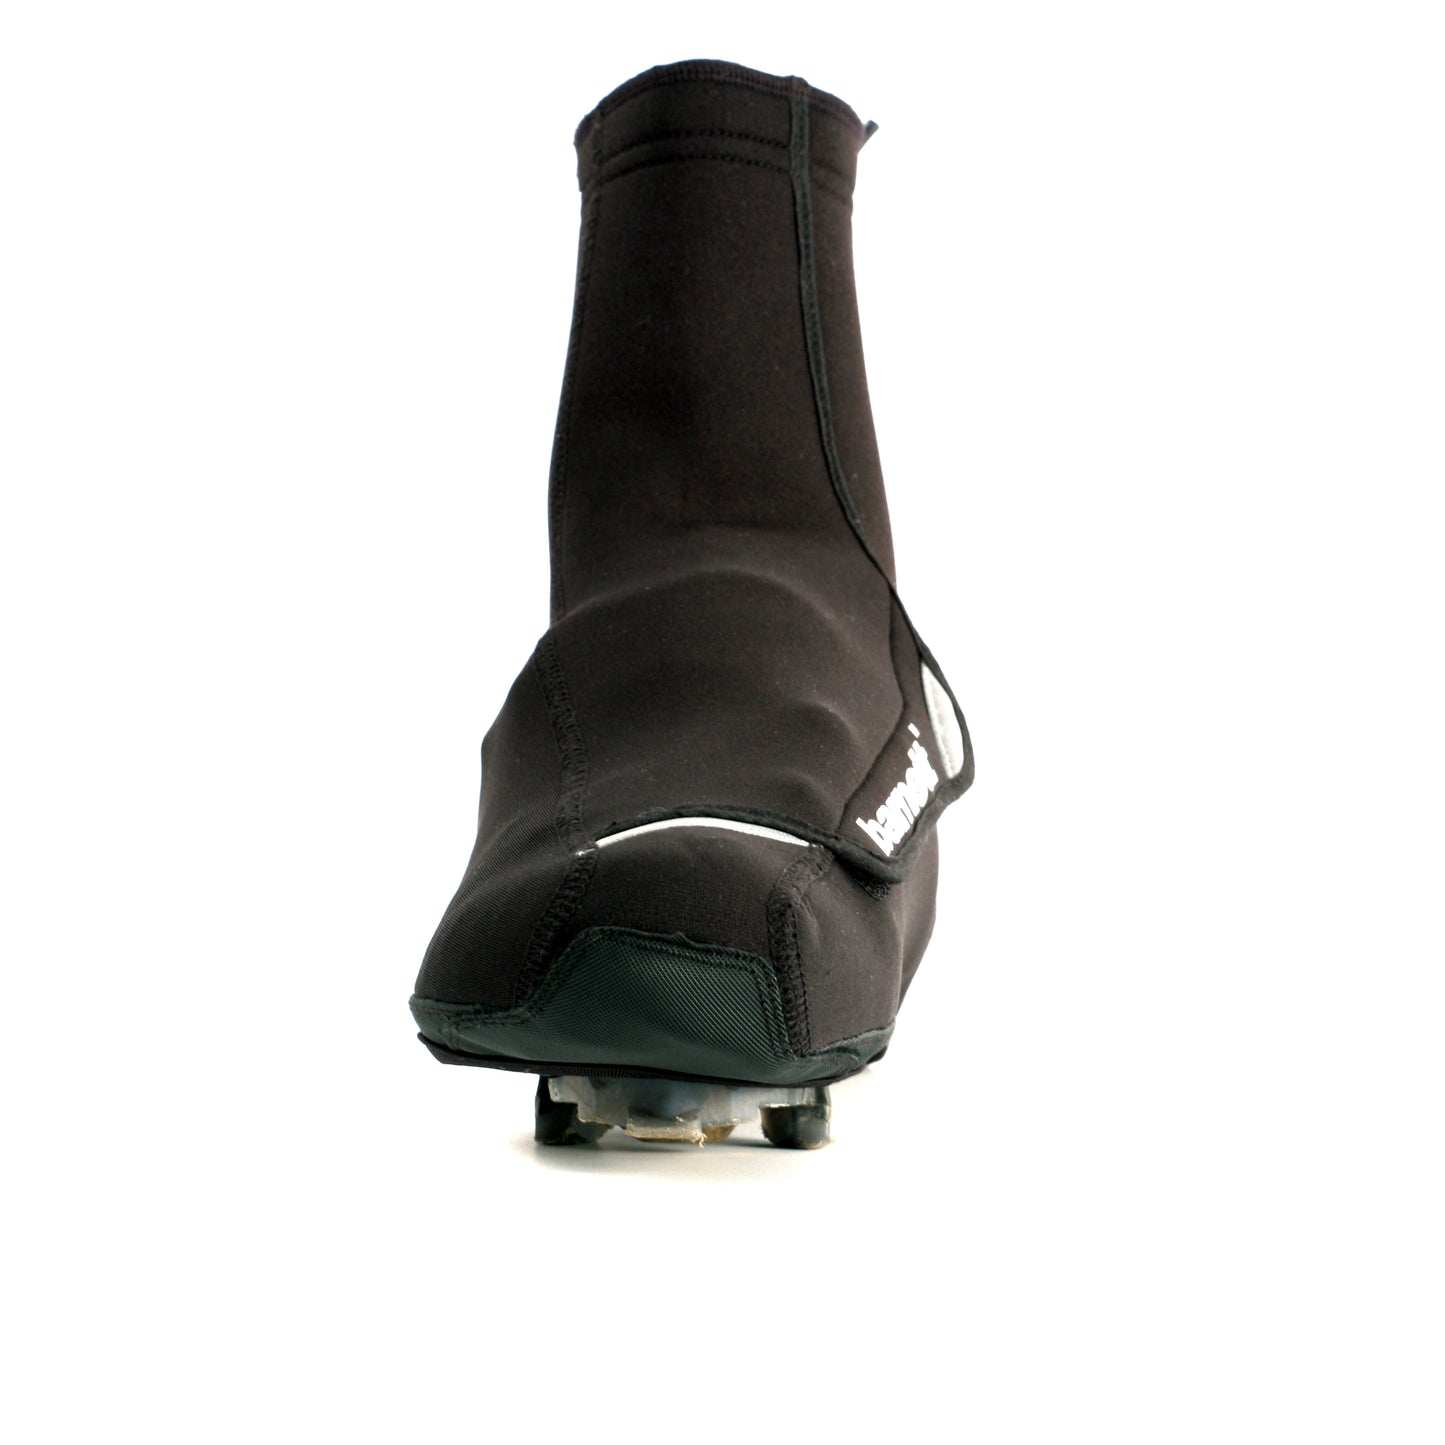 BSP-03 Couvres chaussures noirs, chauds et déperlants